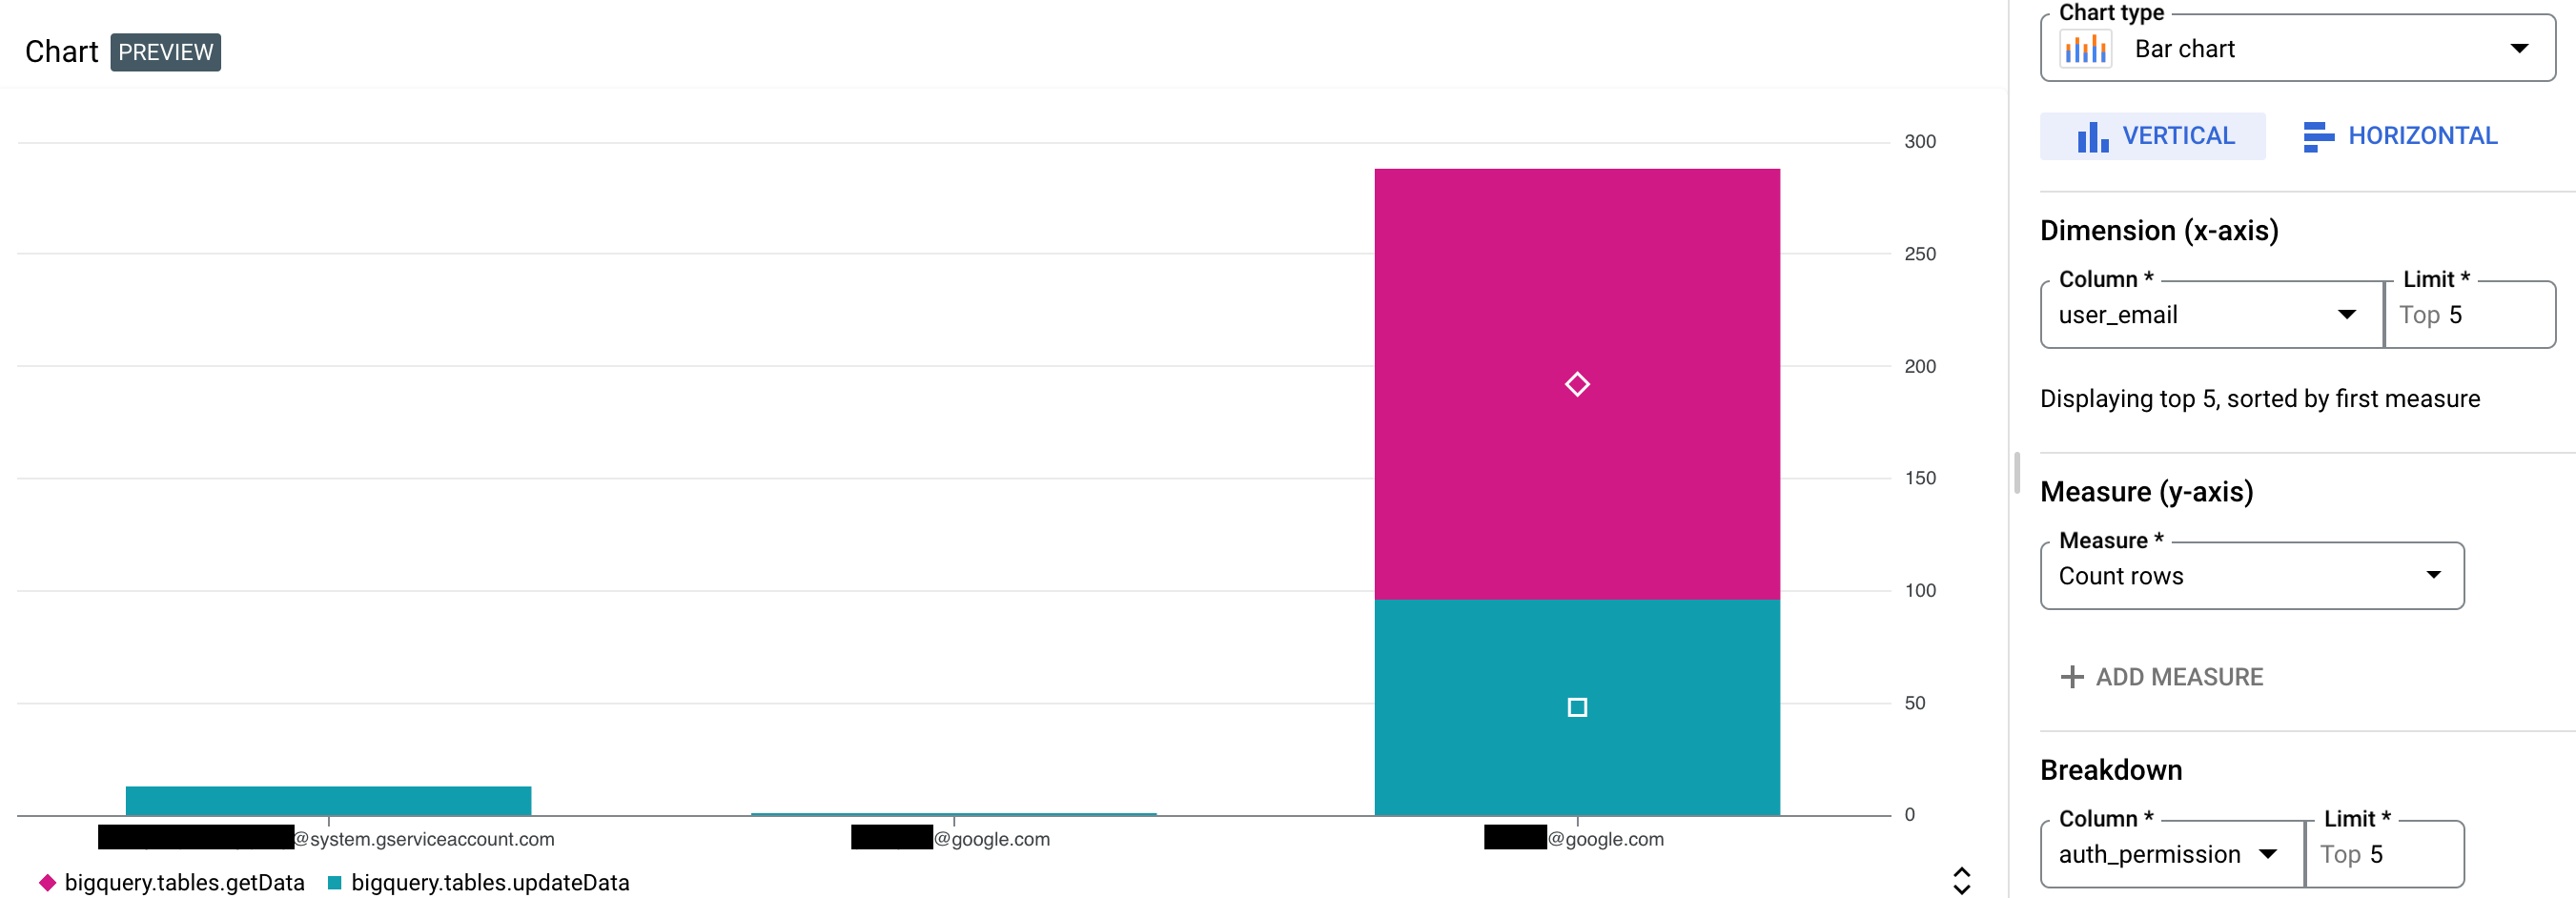 Grafico di esempio per gli audit log di accesso ai dati di BigQuery